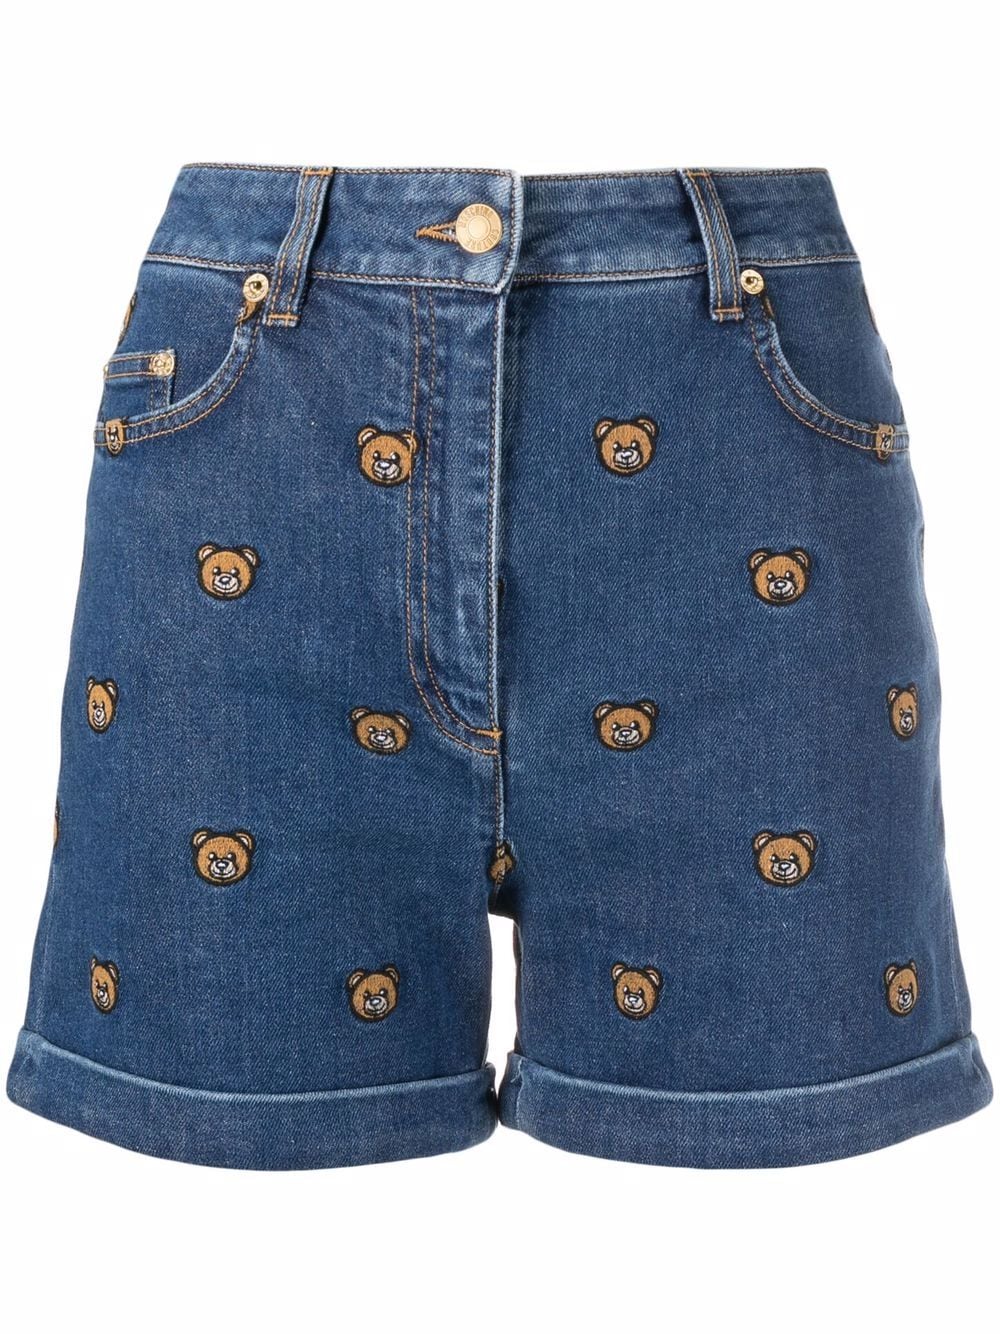 фото Moschino джинсовые шорты с вышивкой teddy bear